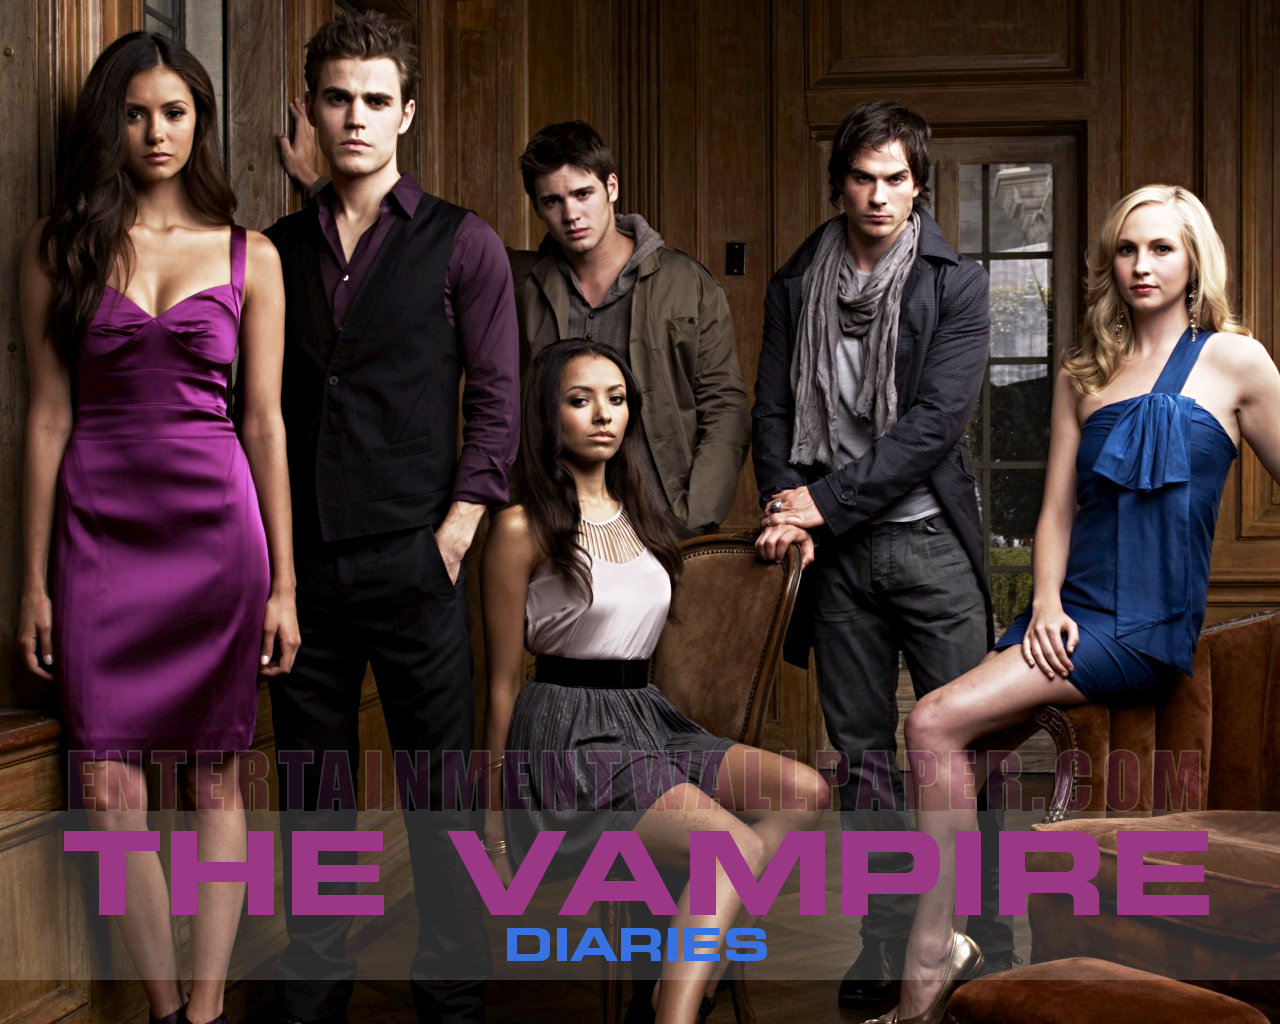 The Vampire Diaries Wallpaper - #20021922 (1280x1024) | Desktop ...